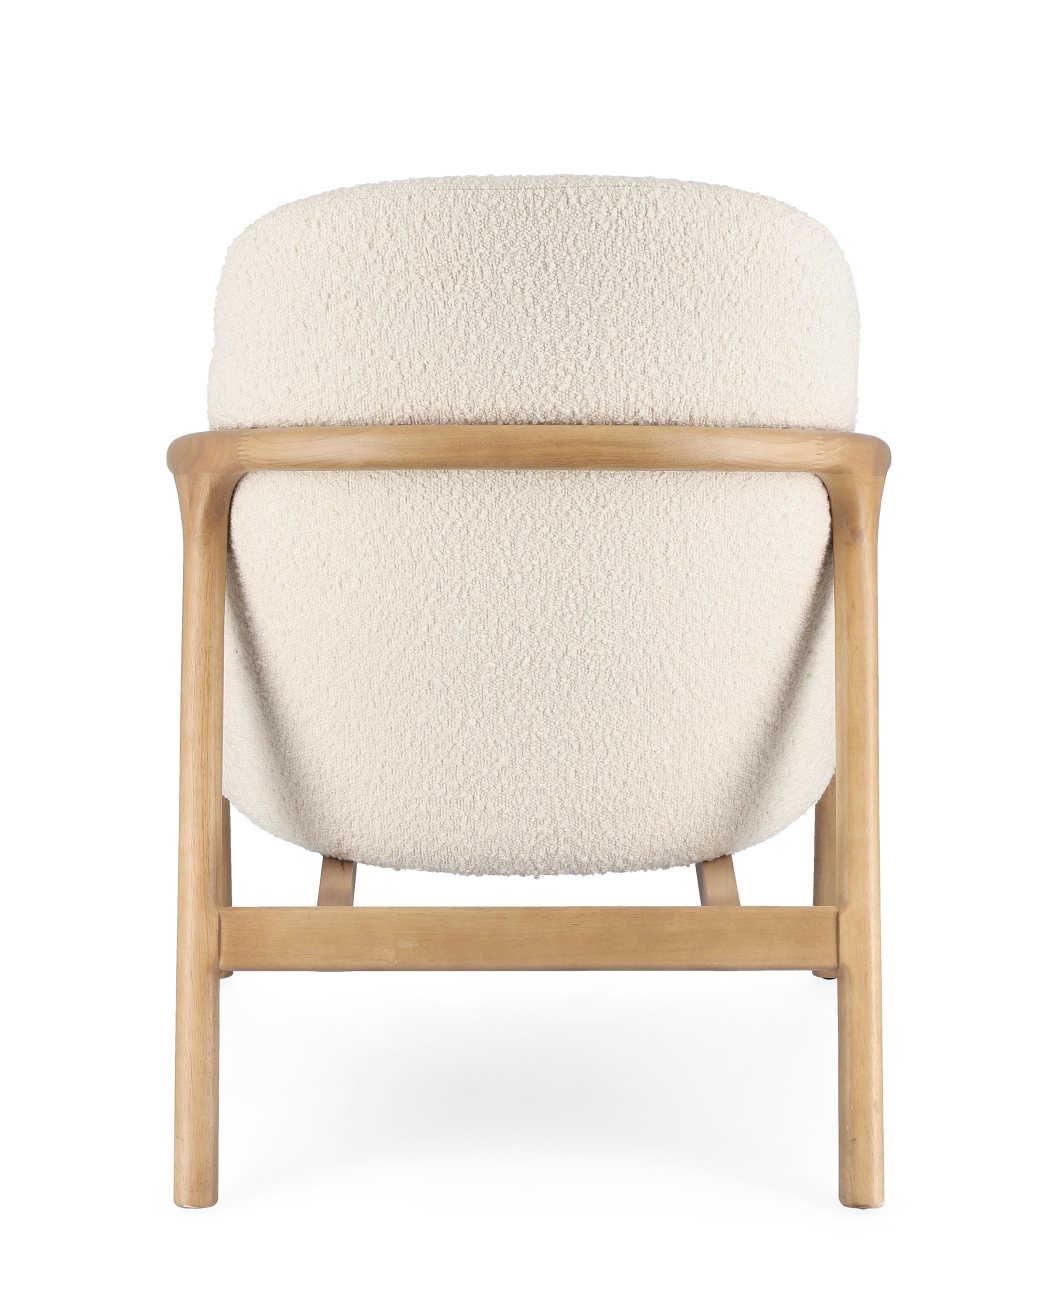 Der Sessel Elaide überzeugt mit seinem modernen Stil. Gefertigt wurde er aus Bouclè-Stoff, welcher einen Creme Farbton besitzt. Das Gestell ist aus Kautschukholz und hat eine natürliche Farbe. Der Sessel verfügt über eine Armlehne.